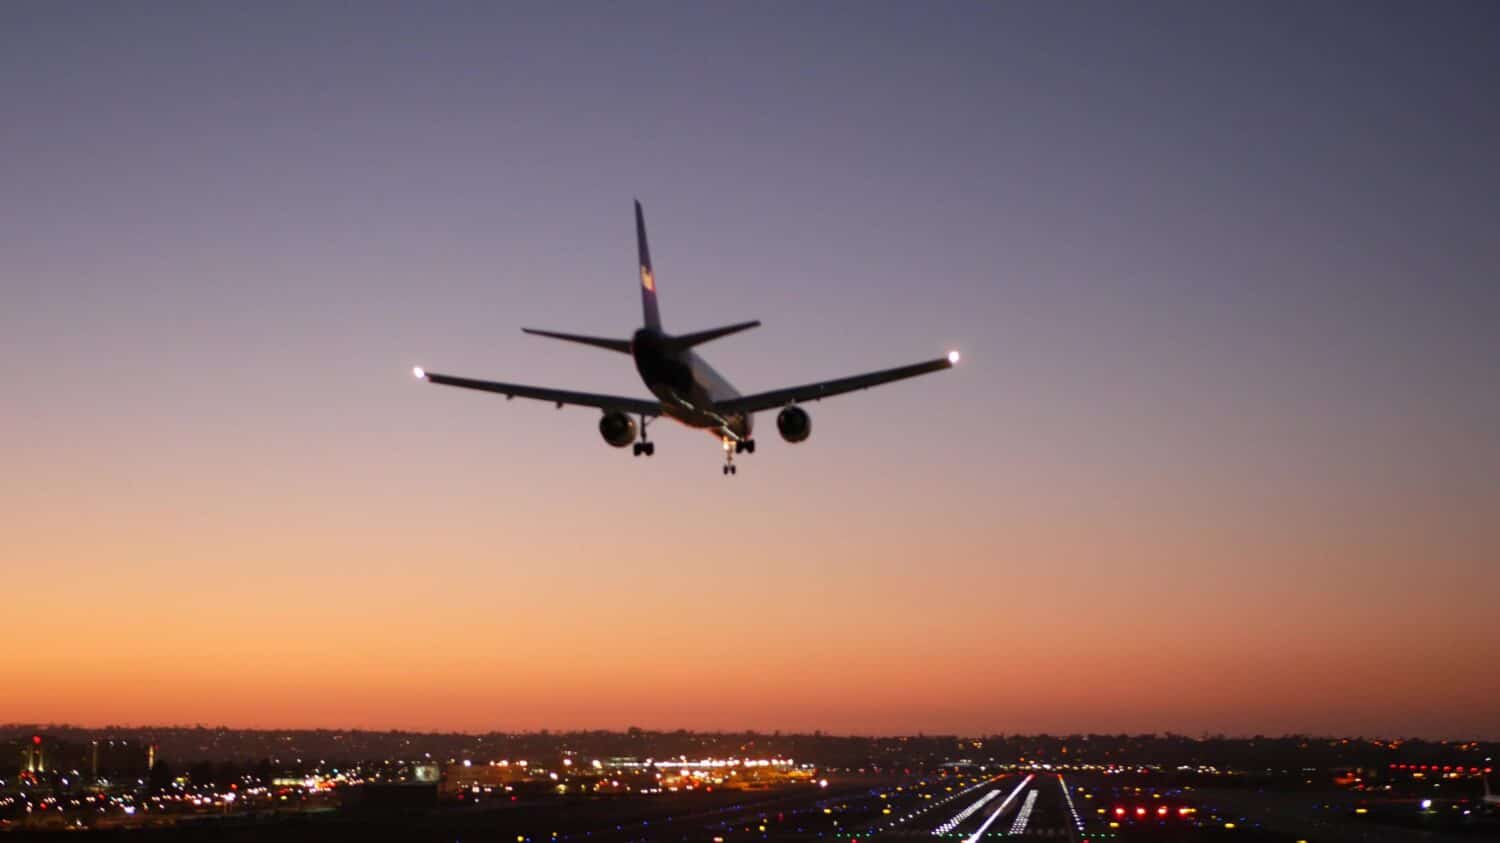 Luci della pista dell'aeroporto di notte, aereo o aereo che atterra sulla pista di atterraggio, crepuscolo e tramonto.  Jet aereo di linea che arriva all'aerodromo, campo d'aviazione di San Diego, California USA.  Aerei che volano a mezz'aria nel cielo.